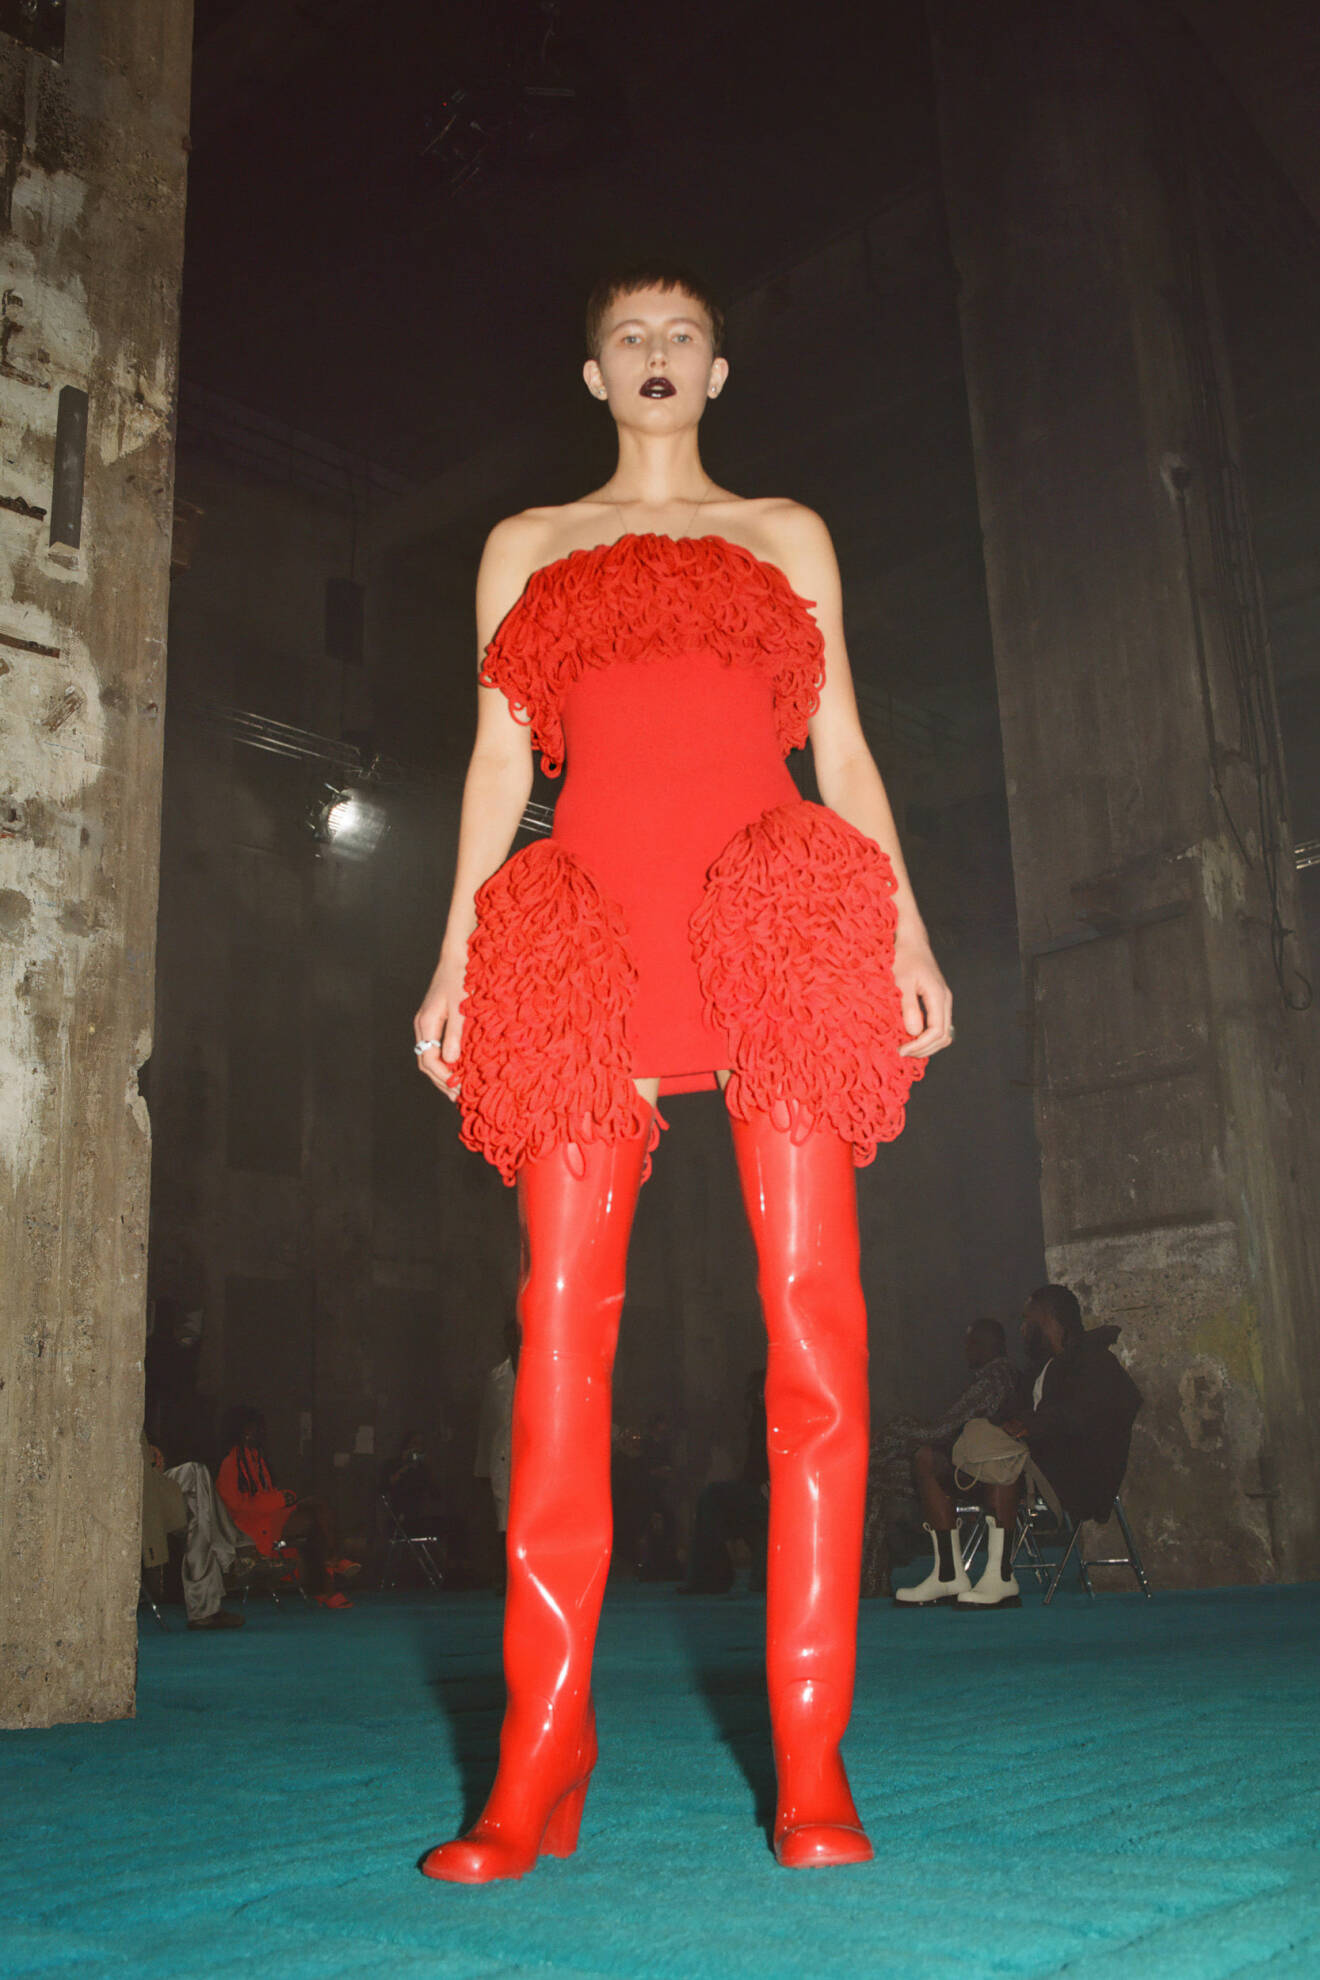 Röd klänning och röda stövlar från Bottega Veneta kollektion FW22